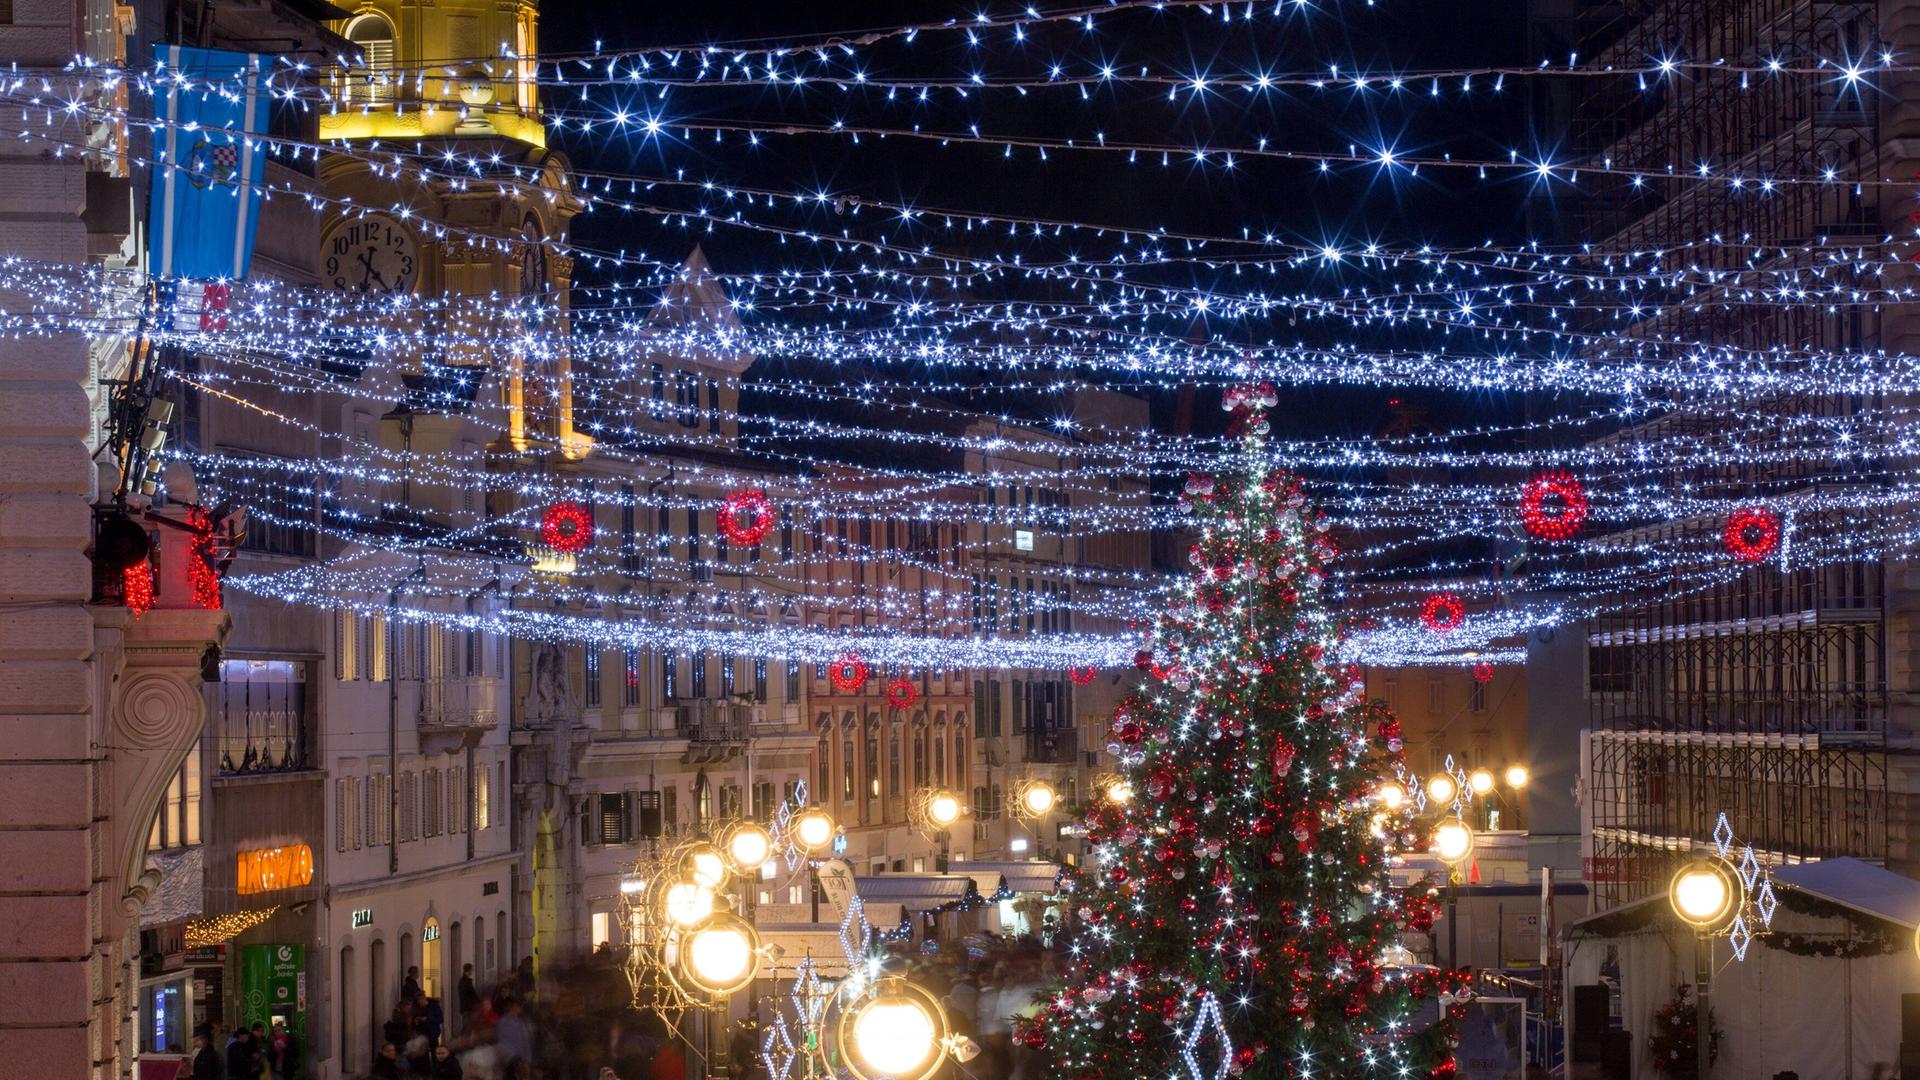 Lichterketten als Weihnachtsbeleuchtung in einer Großstadt.